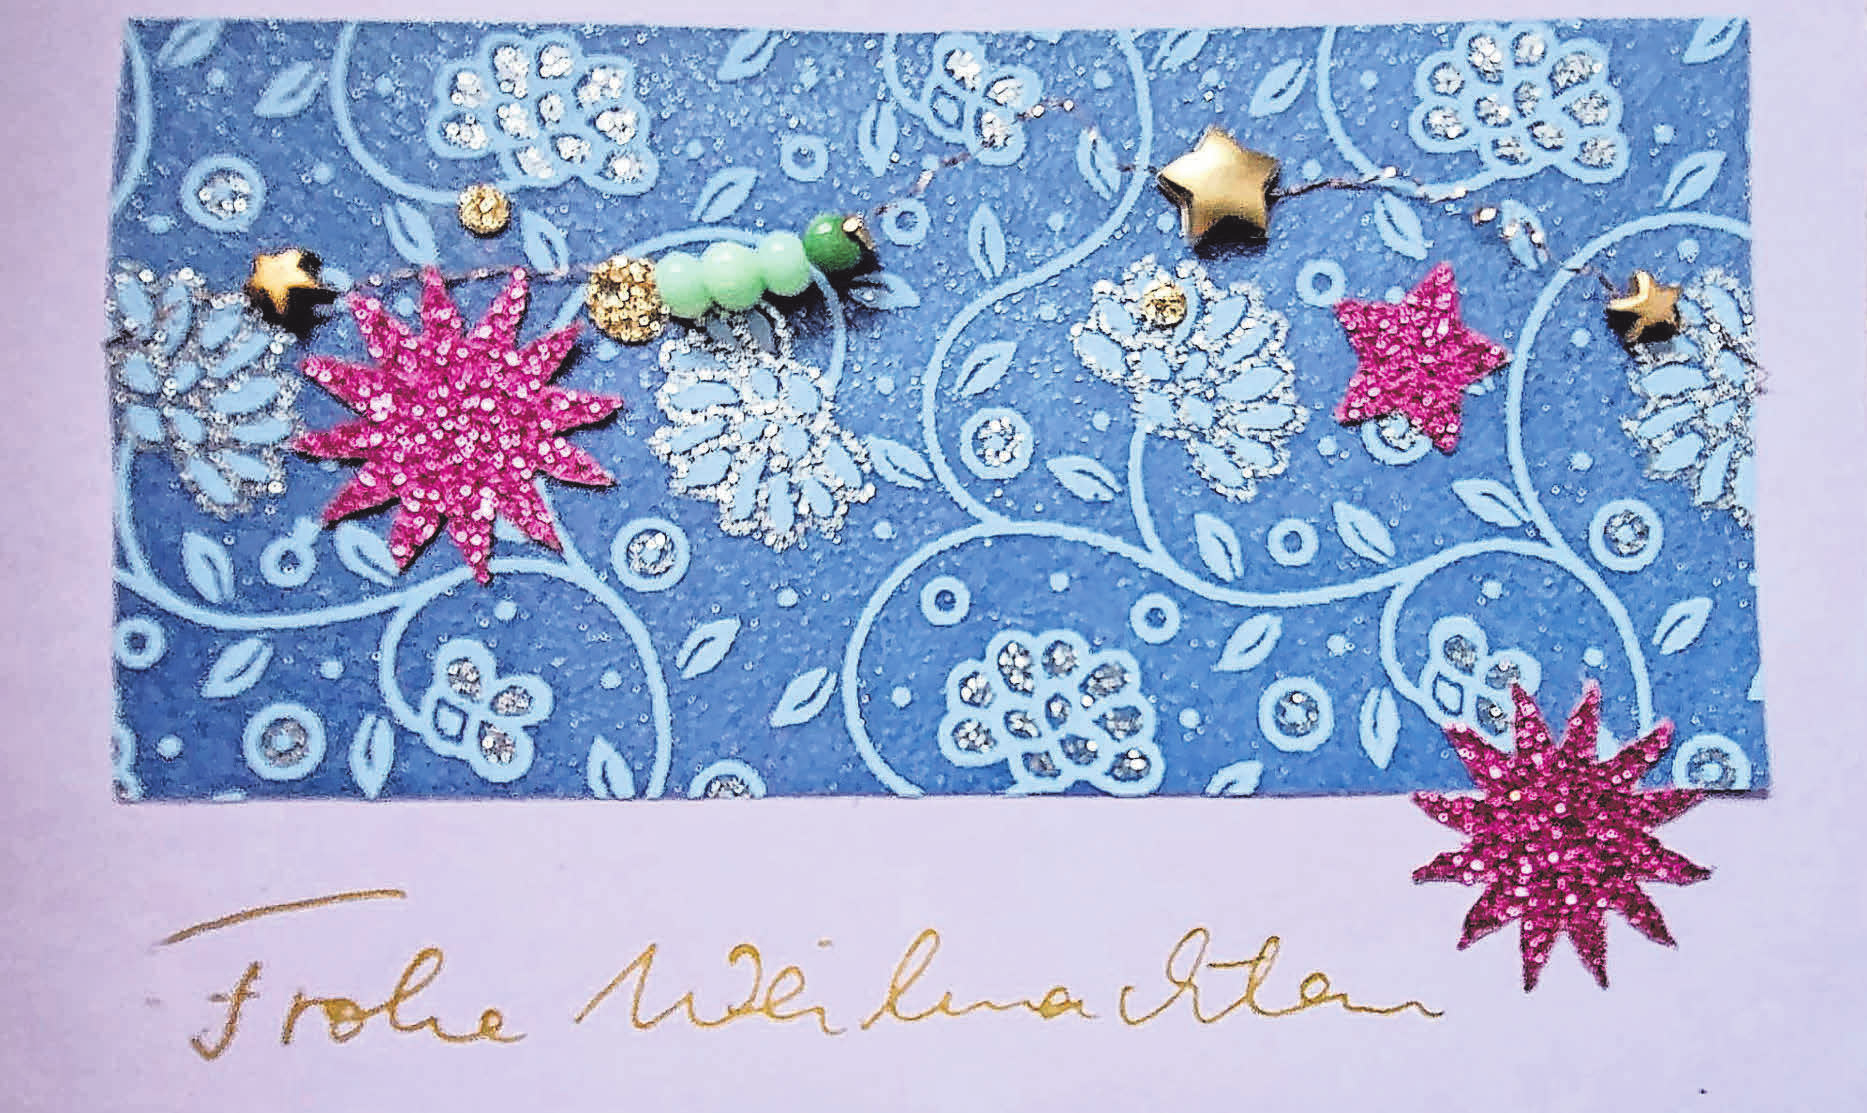 Ein Basteltipp von Heike Heuer-Oelmann: Ich bastele jedes Jahr Weihnachtskarten mit vorhandenen Materialien, z.B. Tapetenresten, ausrangierten Perlenarmbändern und gebrauchten Papierresten.